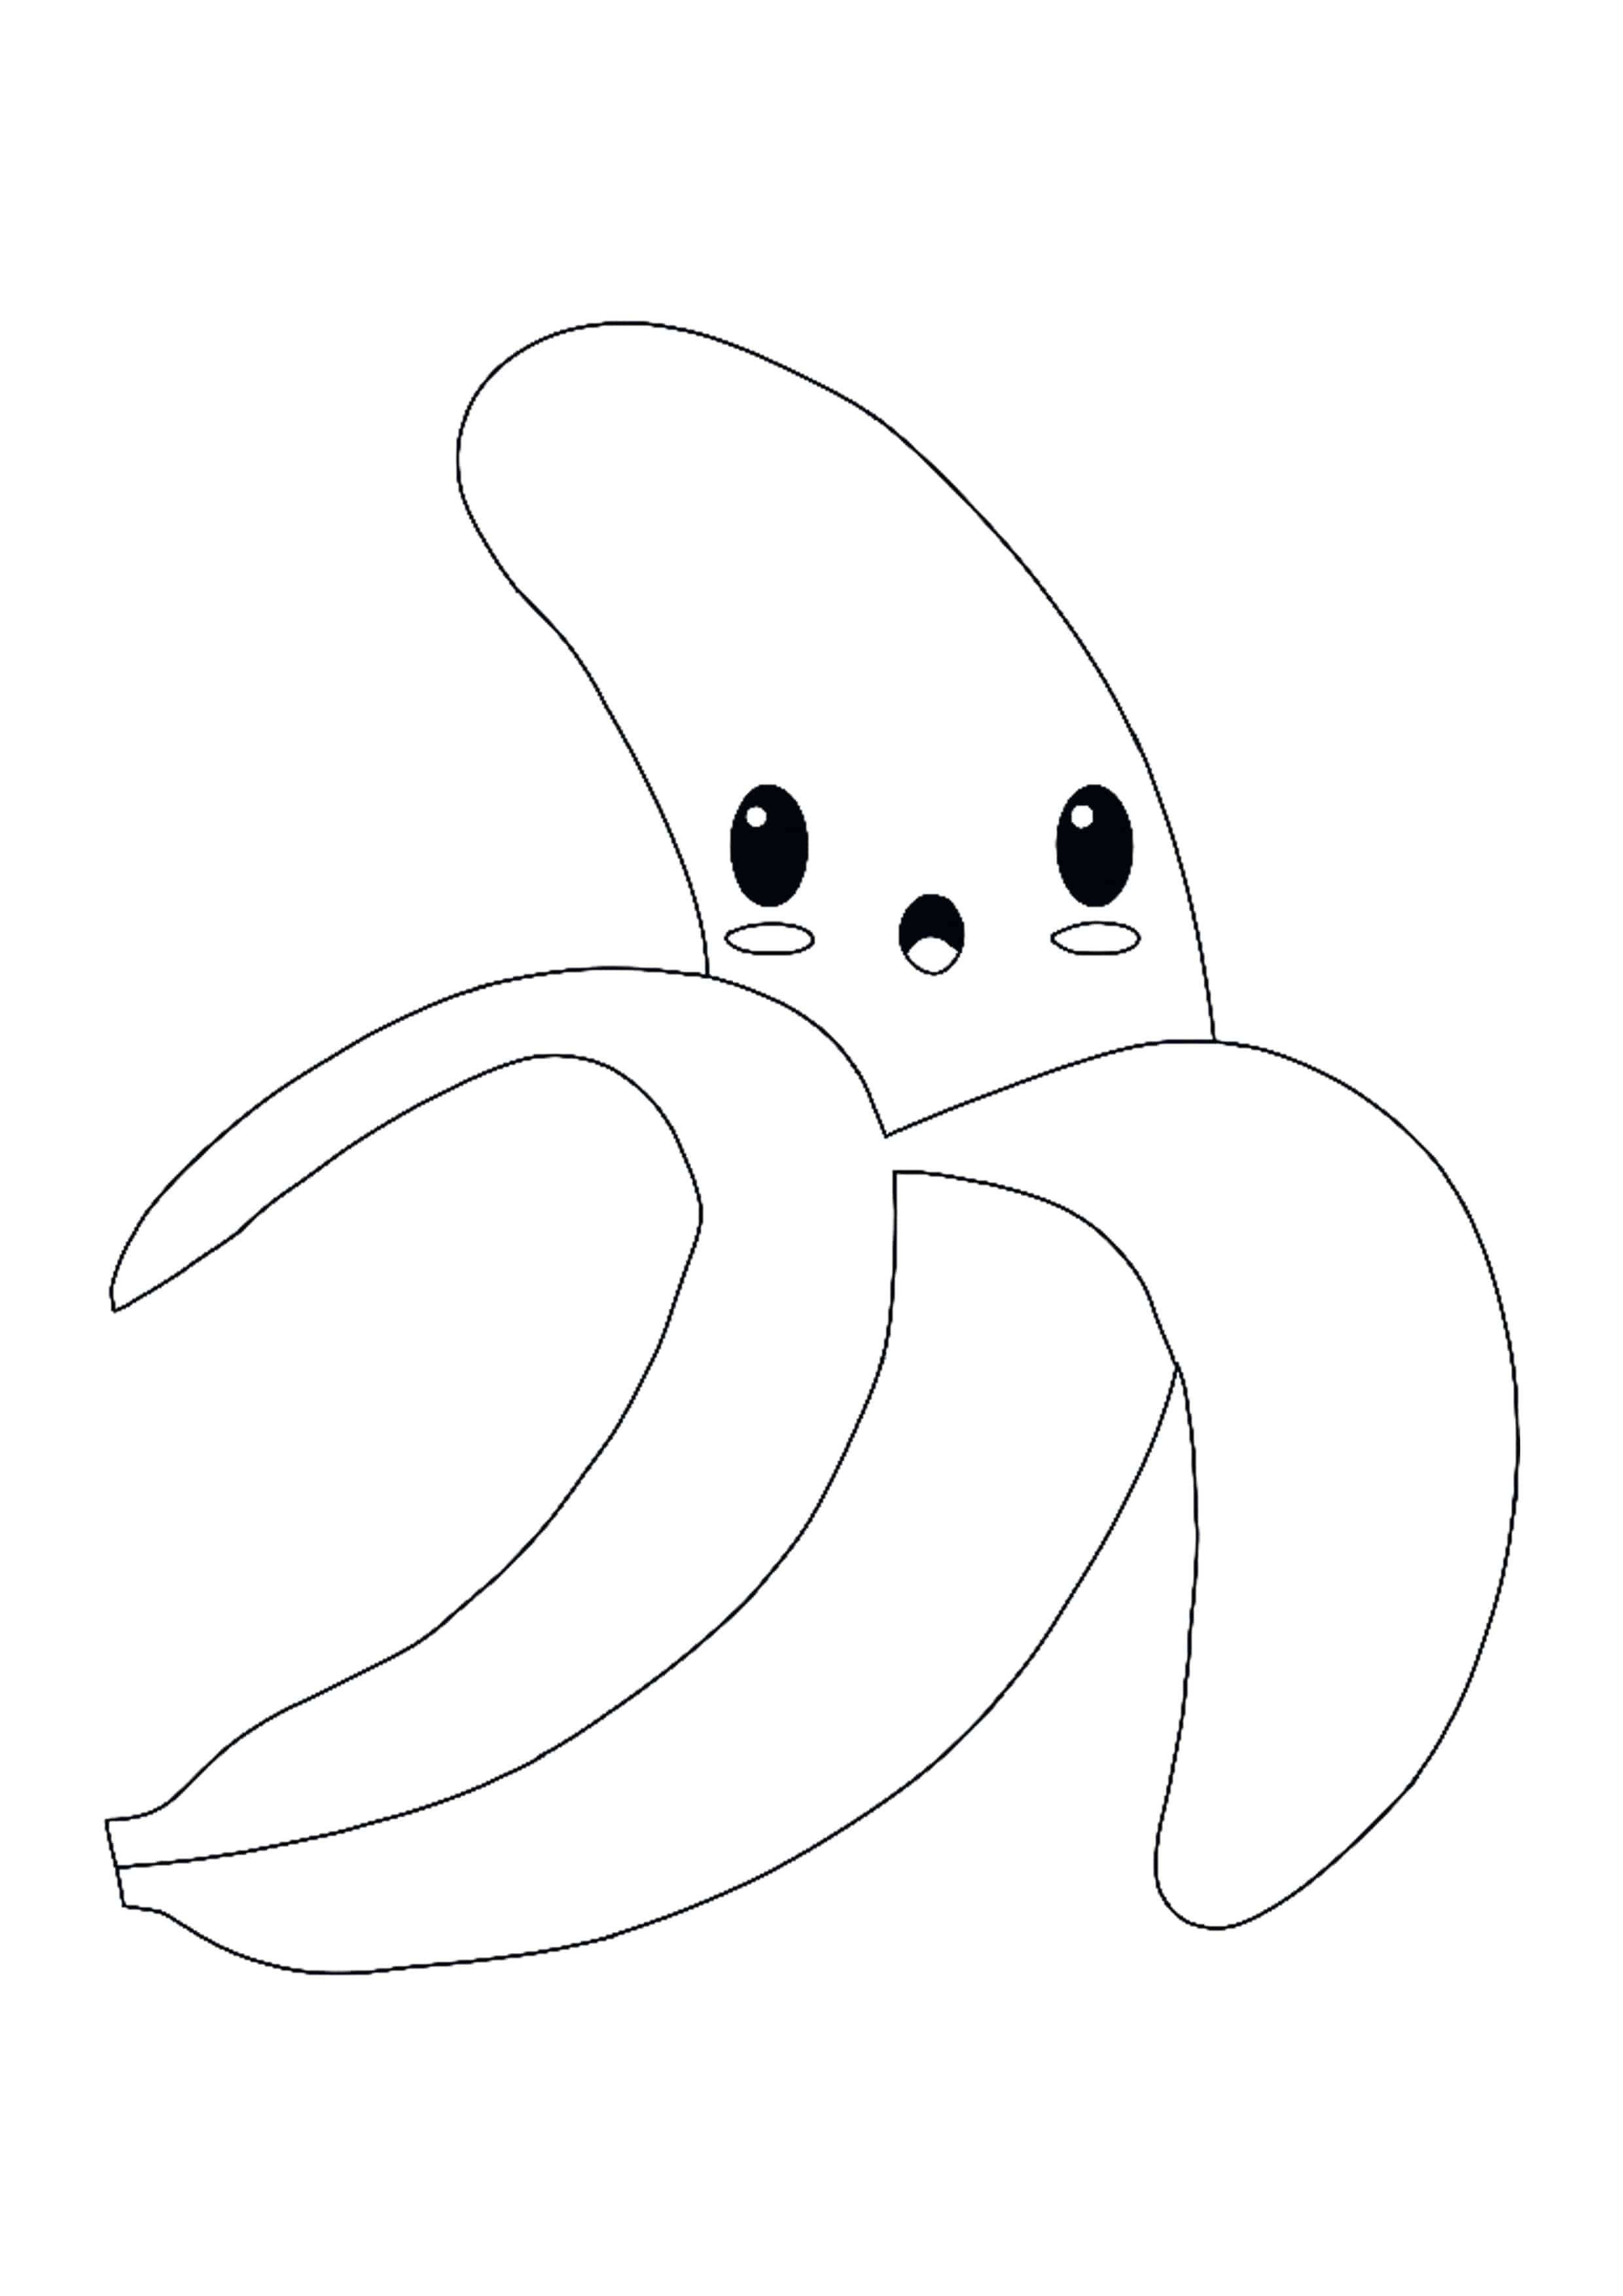 Cute kawaii banana coloring page coloring pages cupcake coloring pages free printable coloring